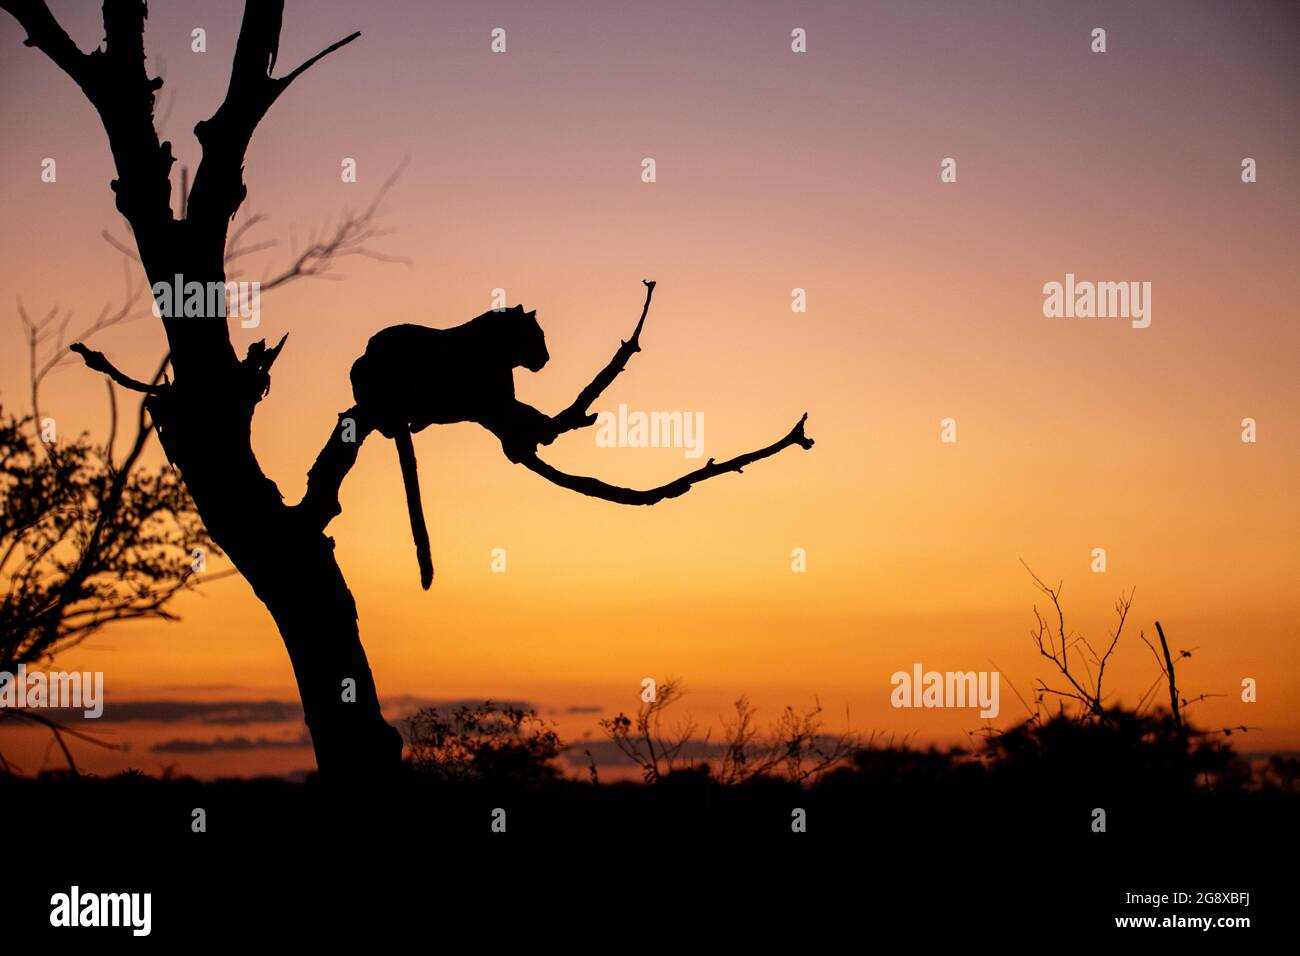 Die Silhouette eines Leoparden, Panthera pardus, liegt bei Sonnenuntergang in einem Baum, der Schwanz hängt nach unten Stockfoto